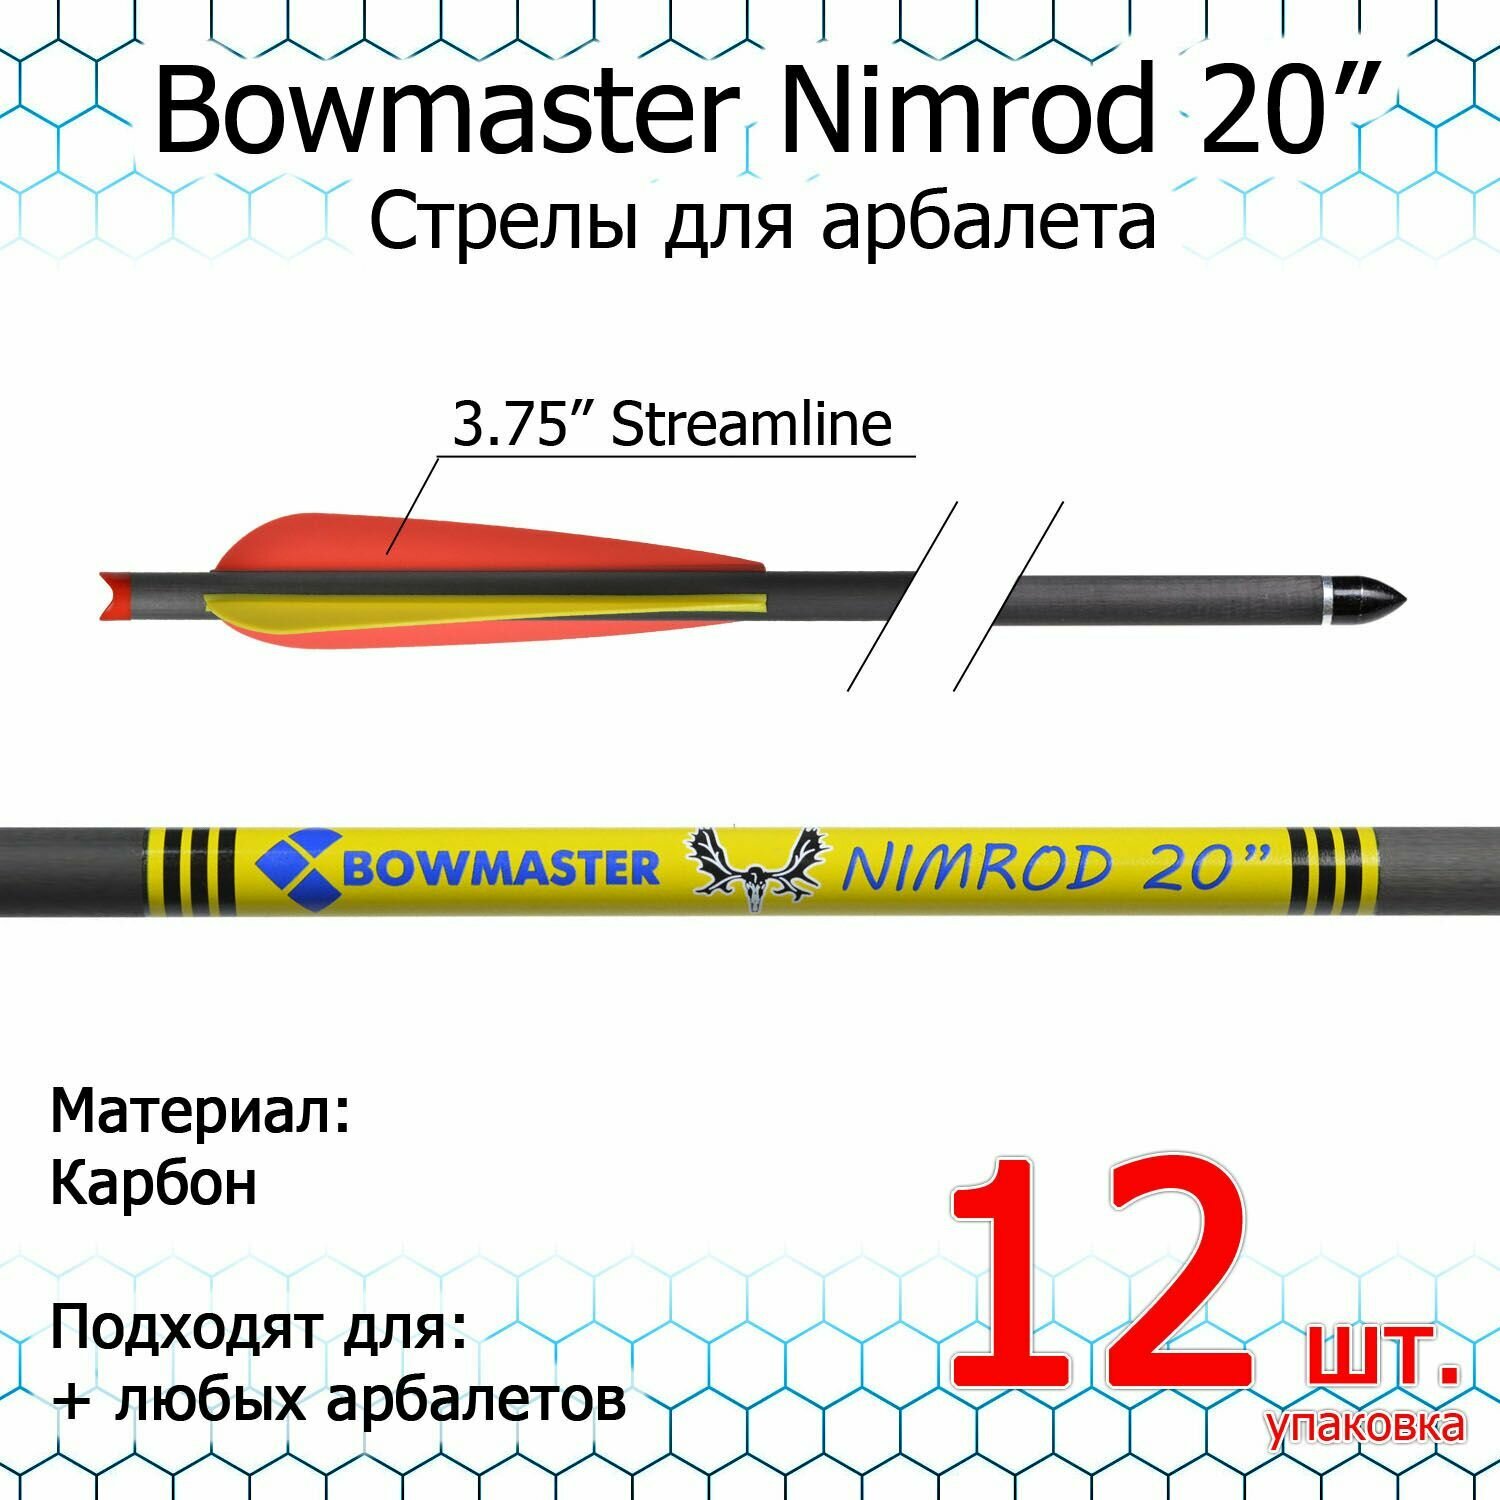 Стрела для арбалета Bowmaster - Nimrod 20 дюймов, карбоновая, 11/32, оперение 3.75" Streamline (12 шт.)